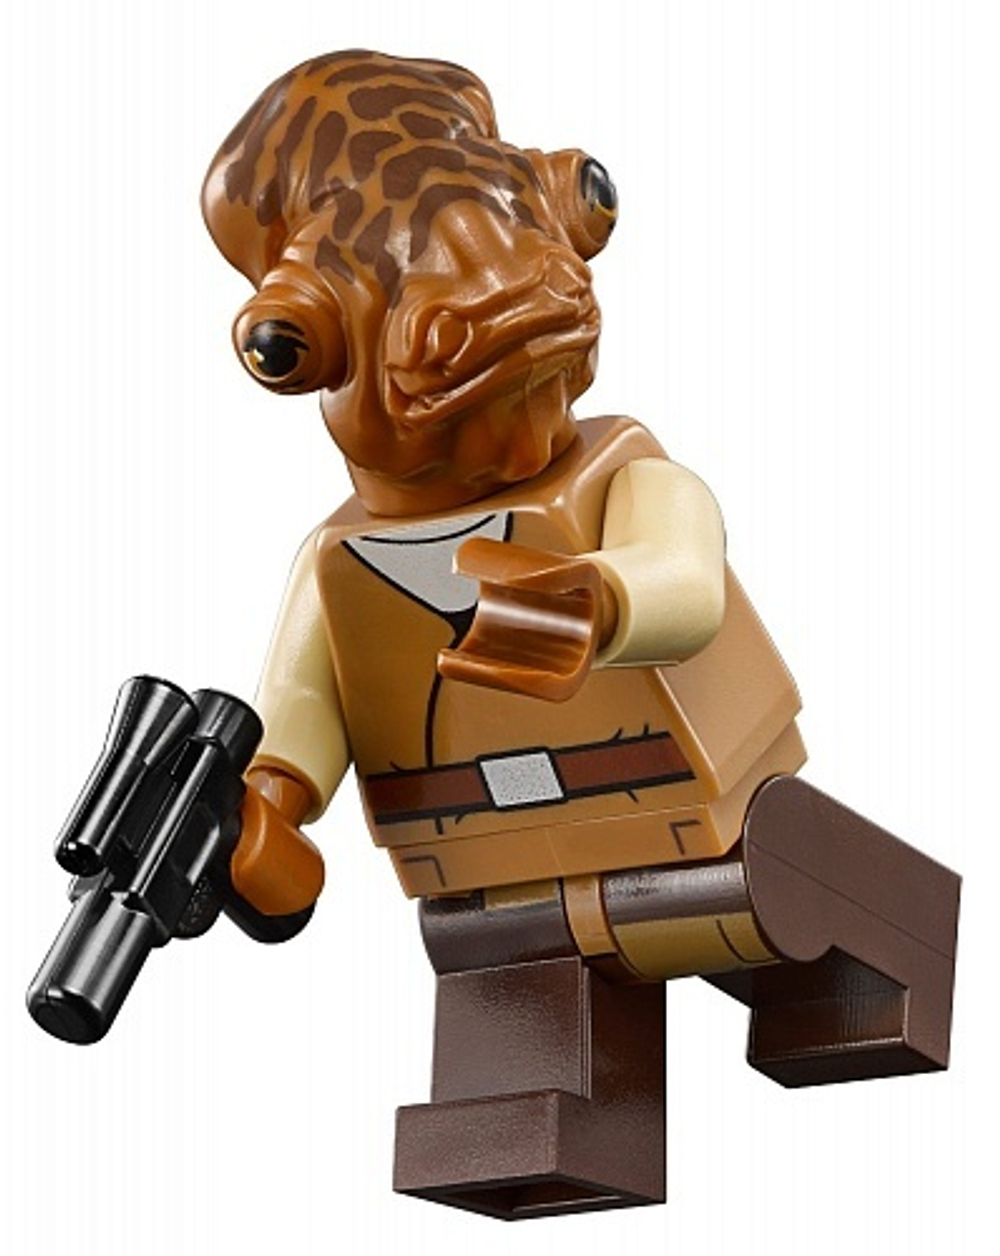 LEGO Star Wars: Военный транспорт Сопротивления 75140 — Resistance Troop Transporter — Лего стар ворз Звёздные войны